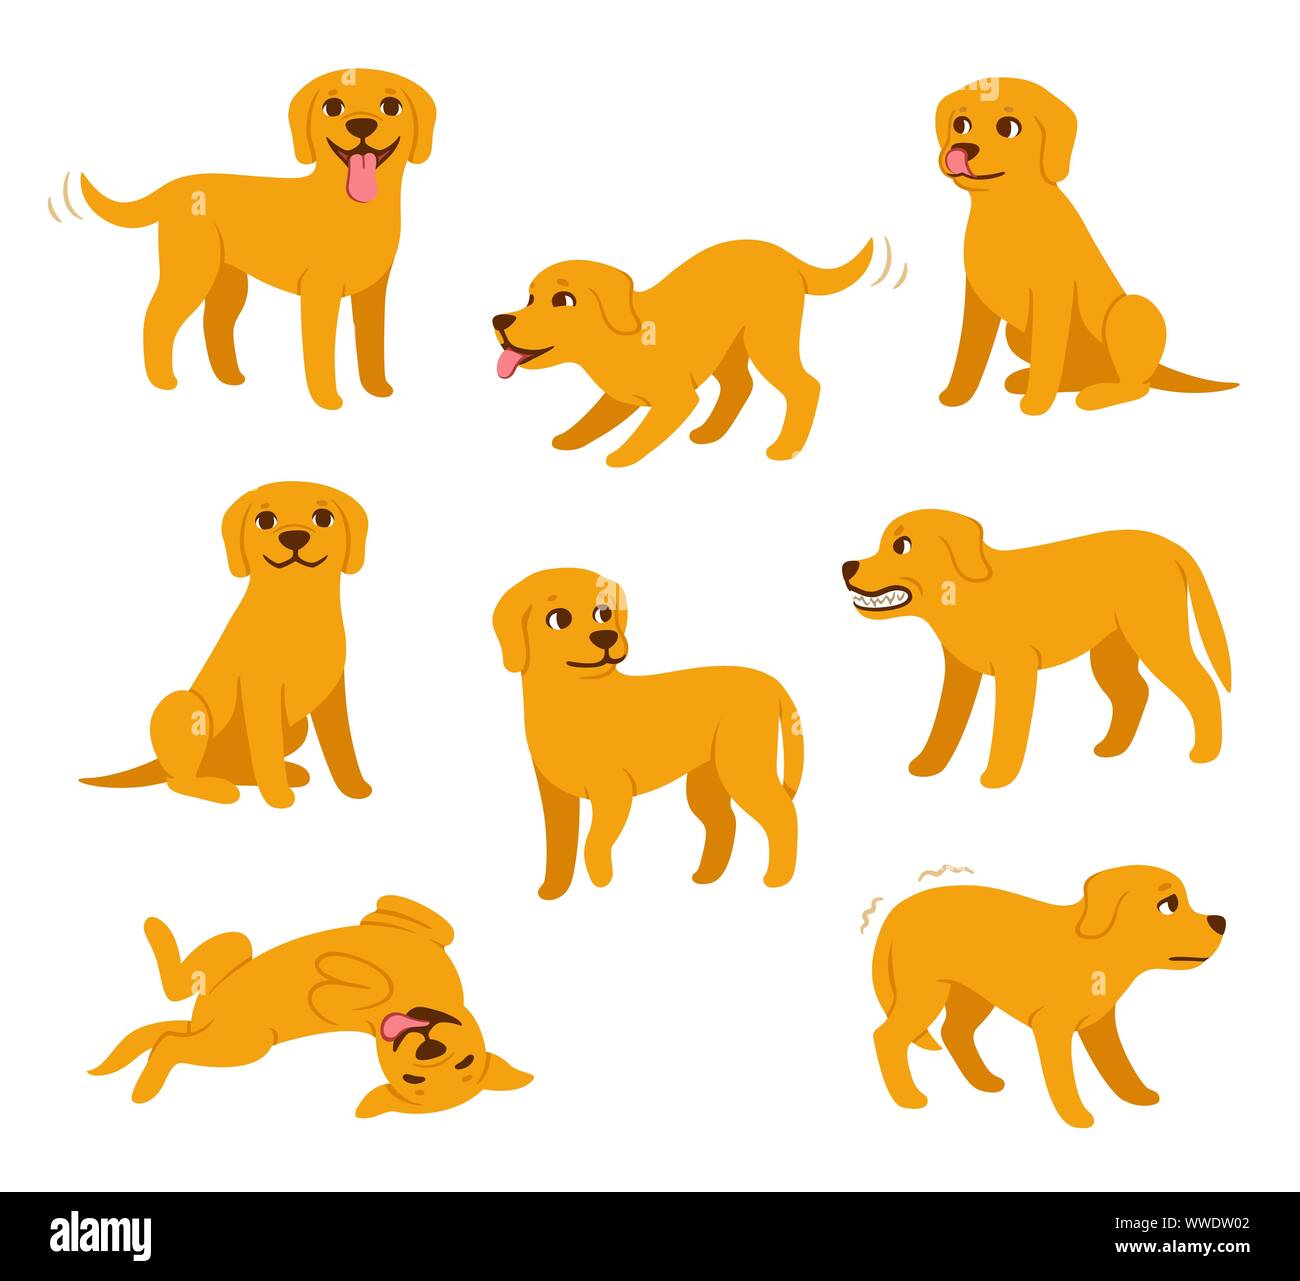 Cartoon hund Set mit unterschiedlichen Posen und Emotionen. Hund Verhalten, Körpersprache und Gesichtsausdruck. Niedlichen gelben Labrador Retriever in einfachen Cartoon Stock Vektor